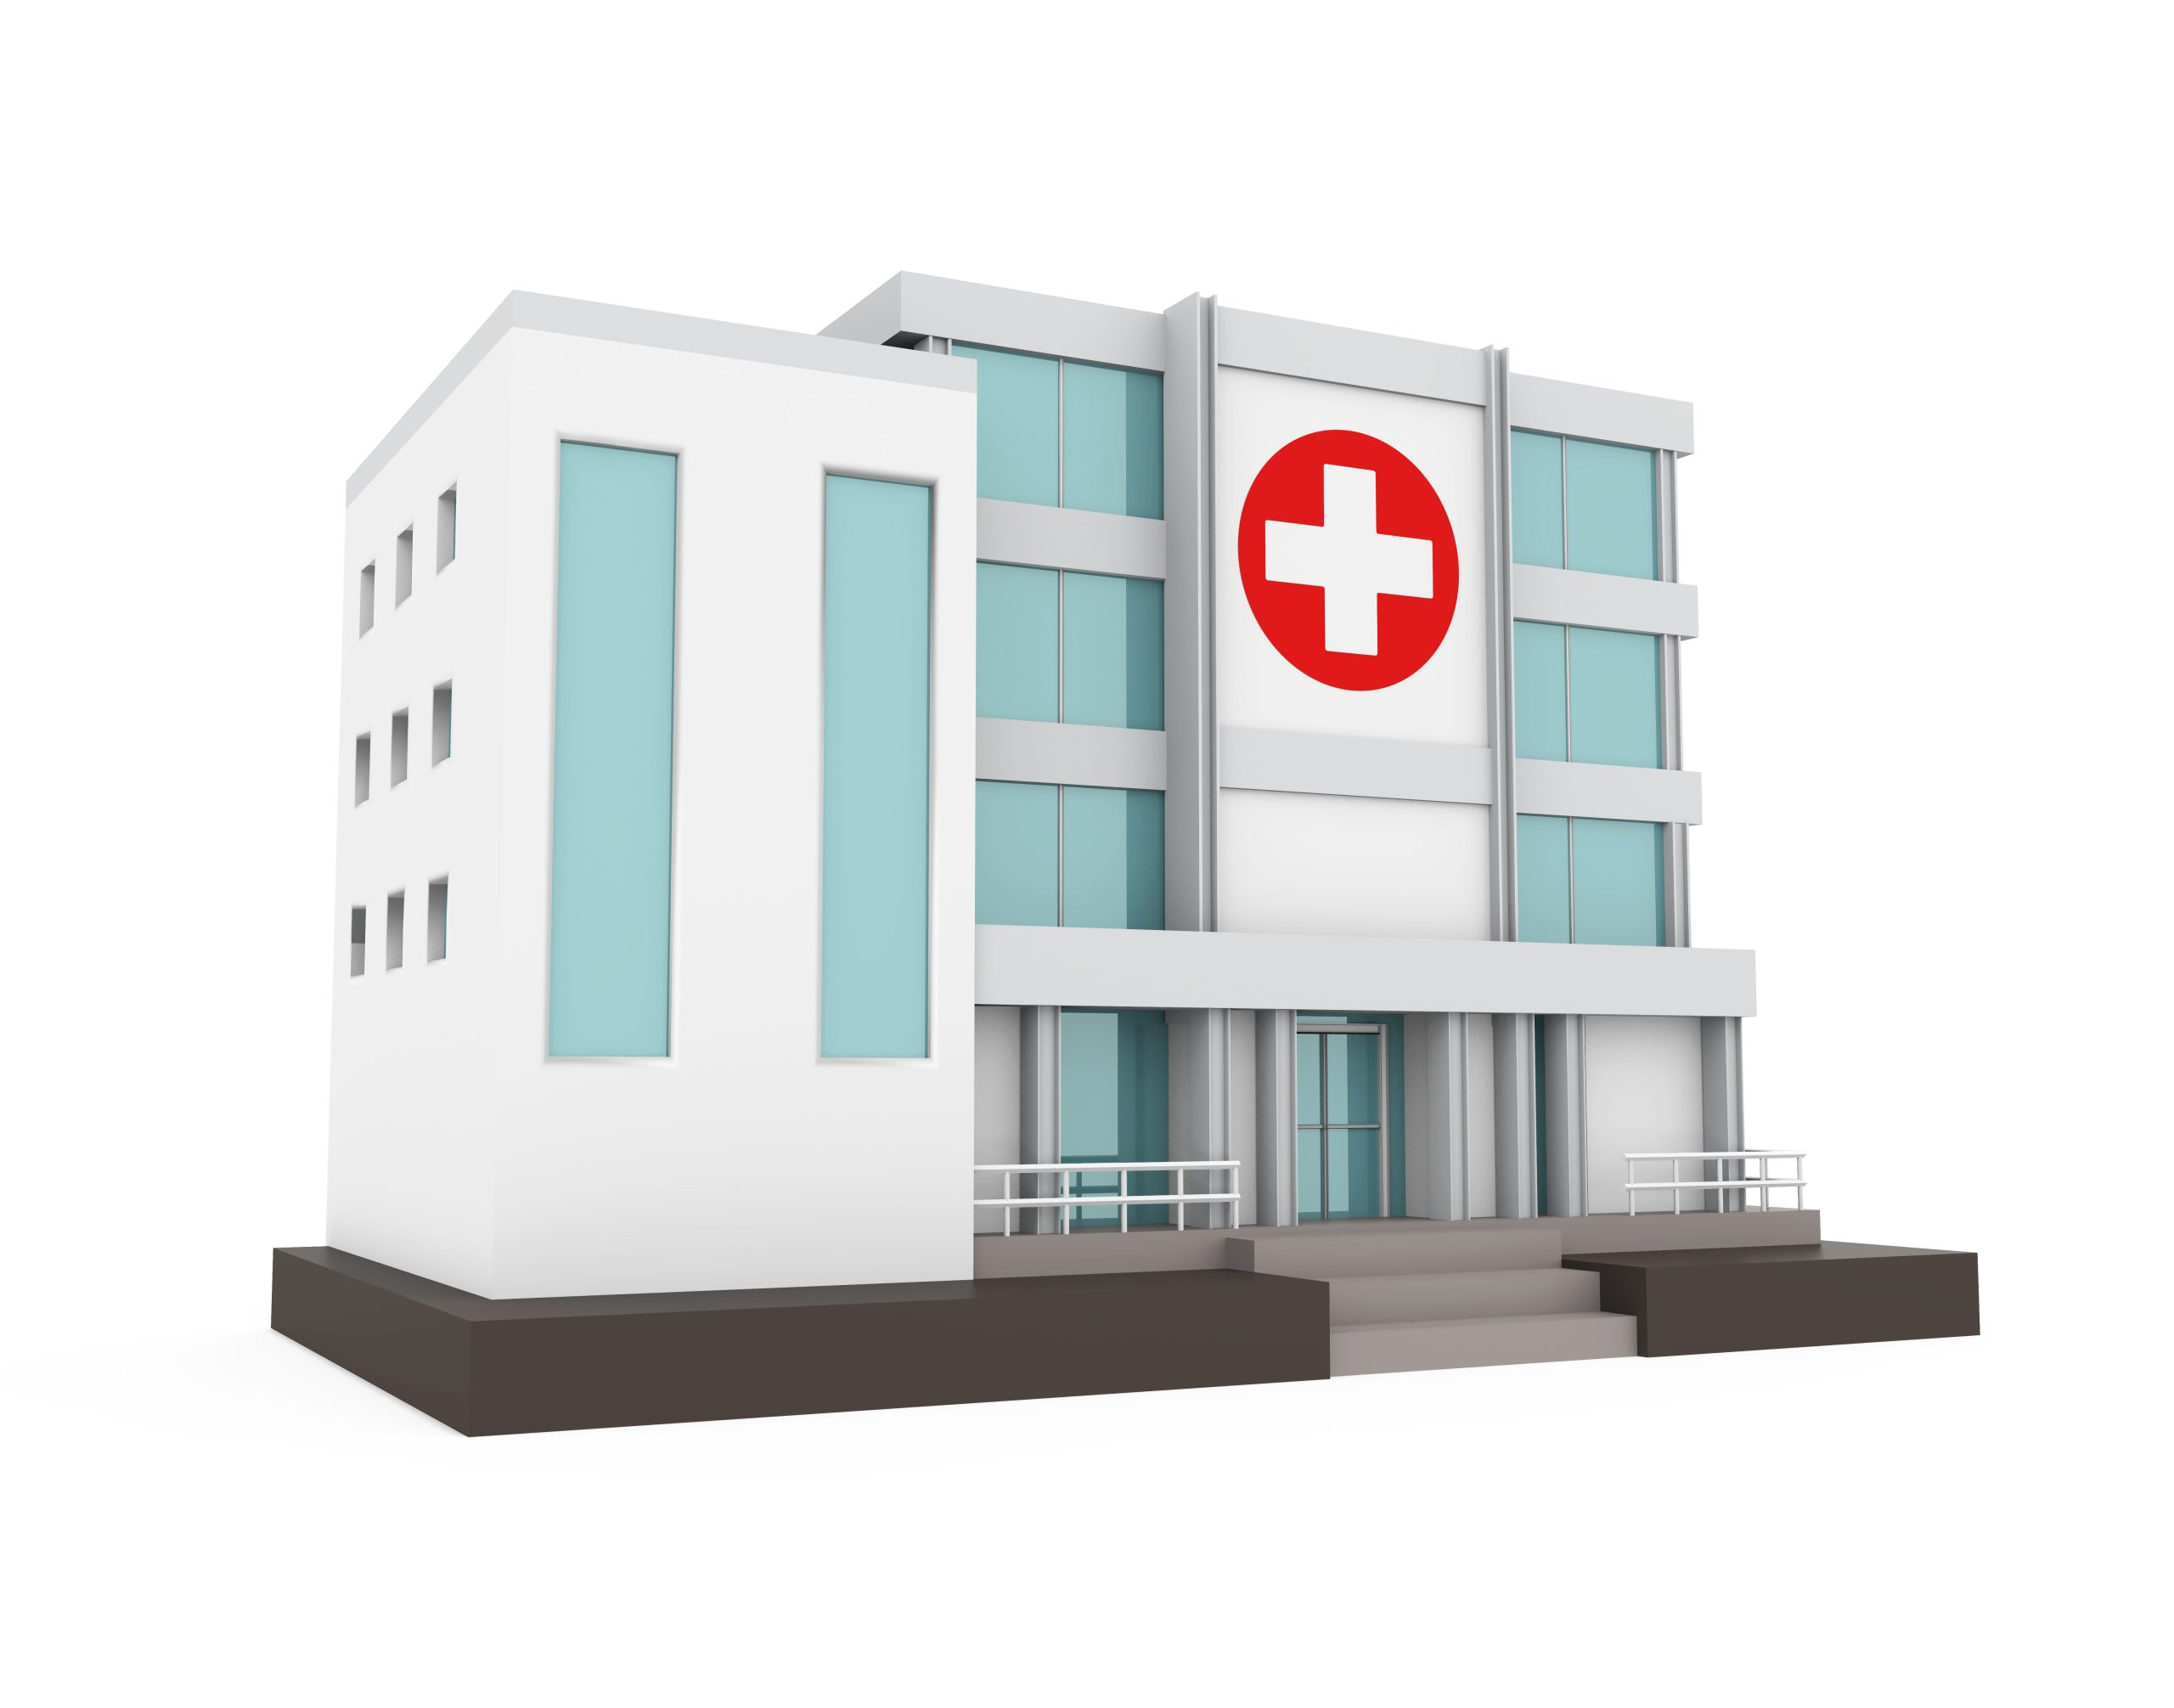 Автономные лечебные учреждения. Больница здание. Медицинский центр здание. Здания медицинских учреждений. Больница на белом фоне.